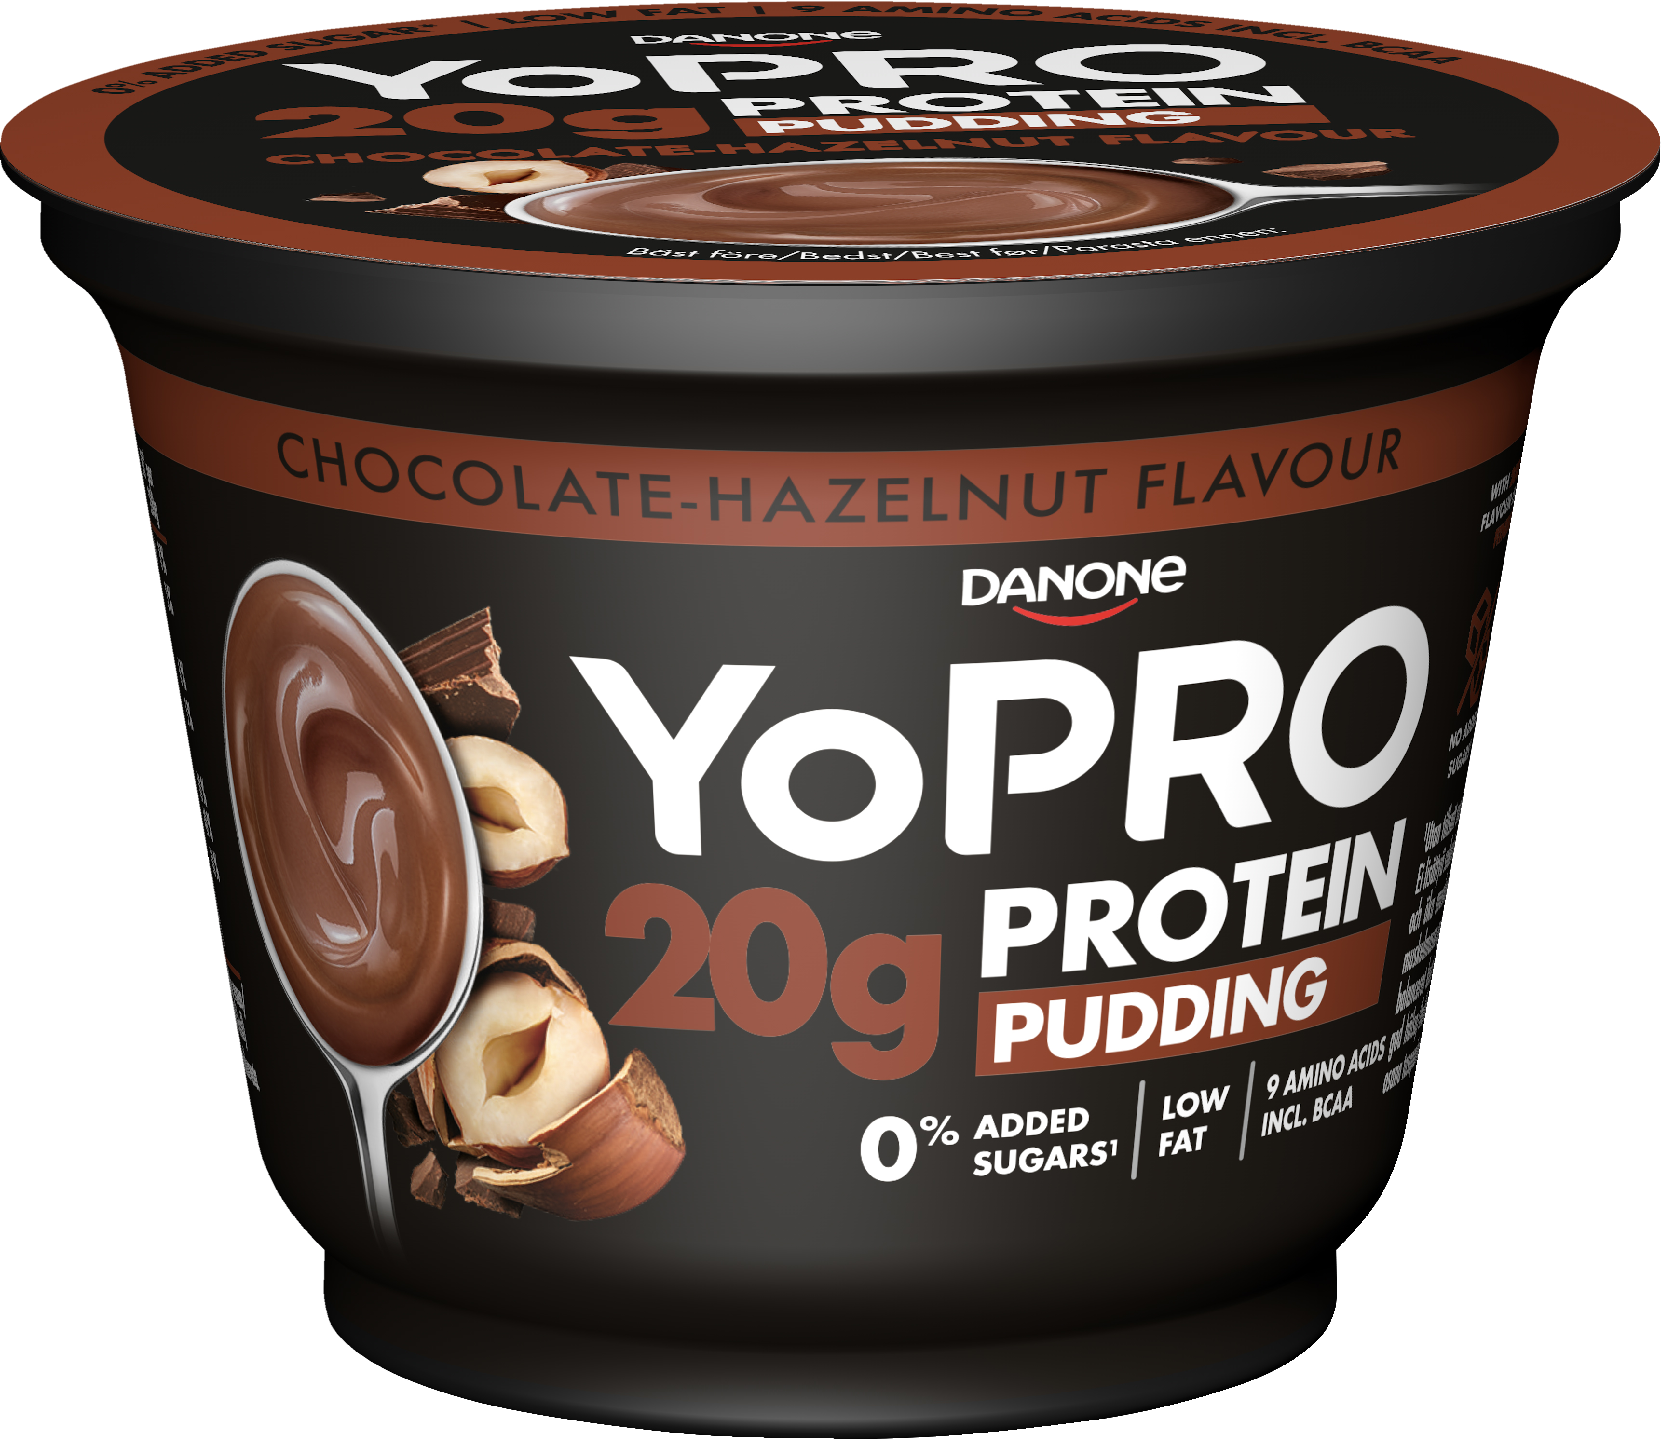 Danone YoPro proteiinivanukas 200g suklaa-hasselpähkinä